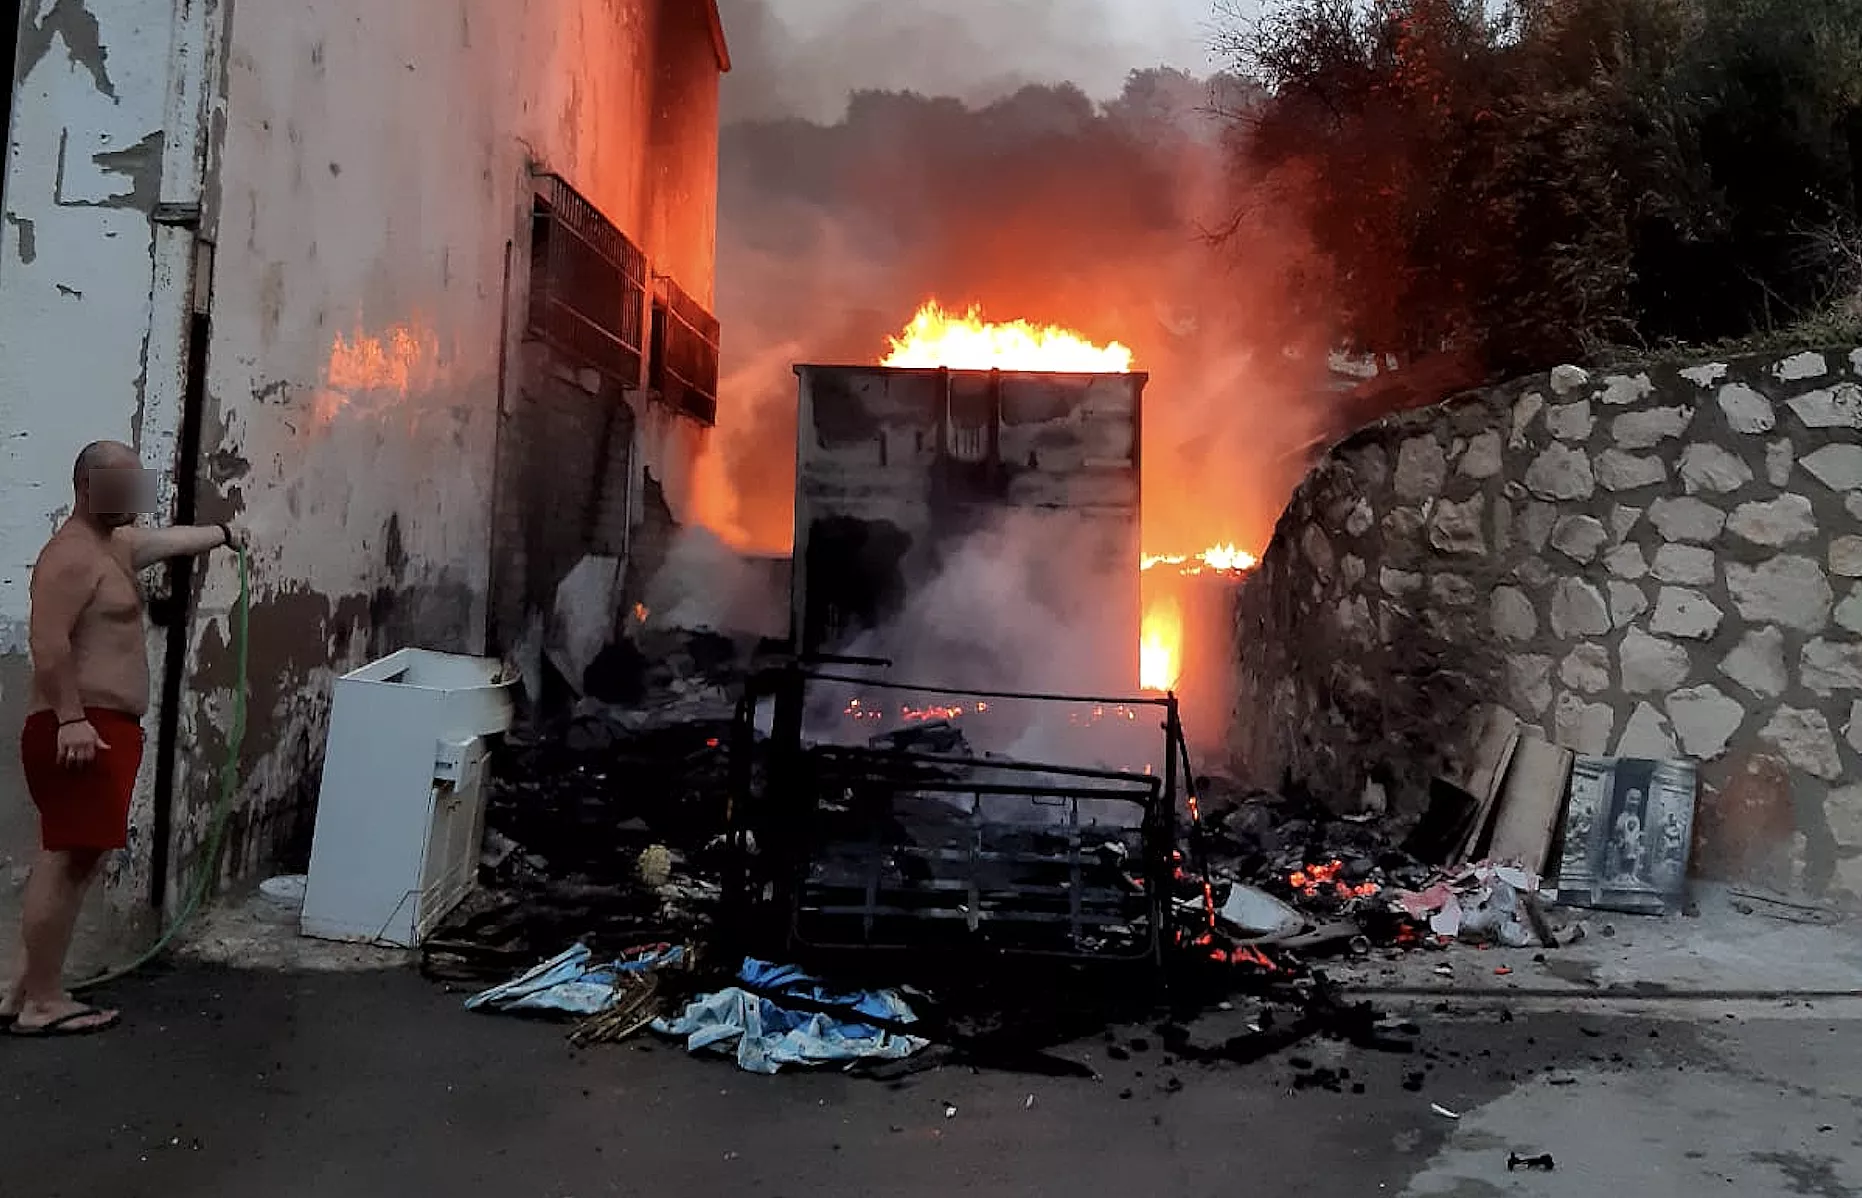 Incendio del "Punto Limpio" de la pedanía de Jauja en la tarde-noche de ayer